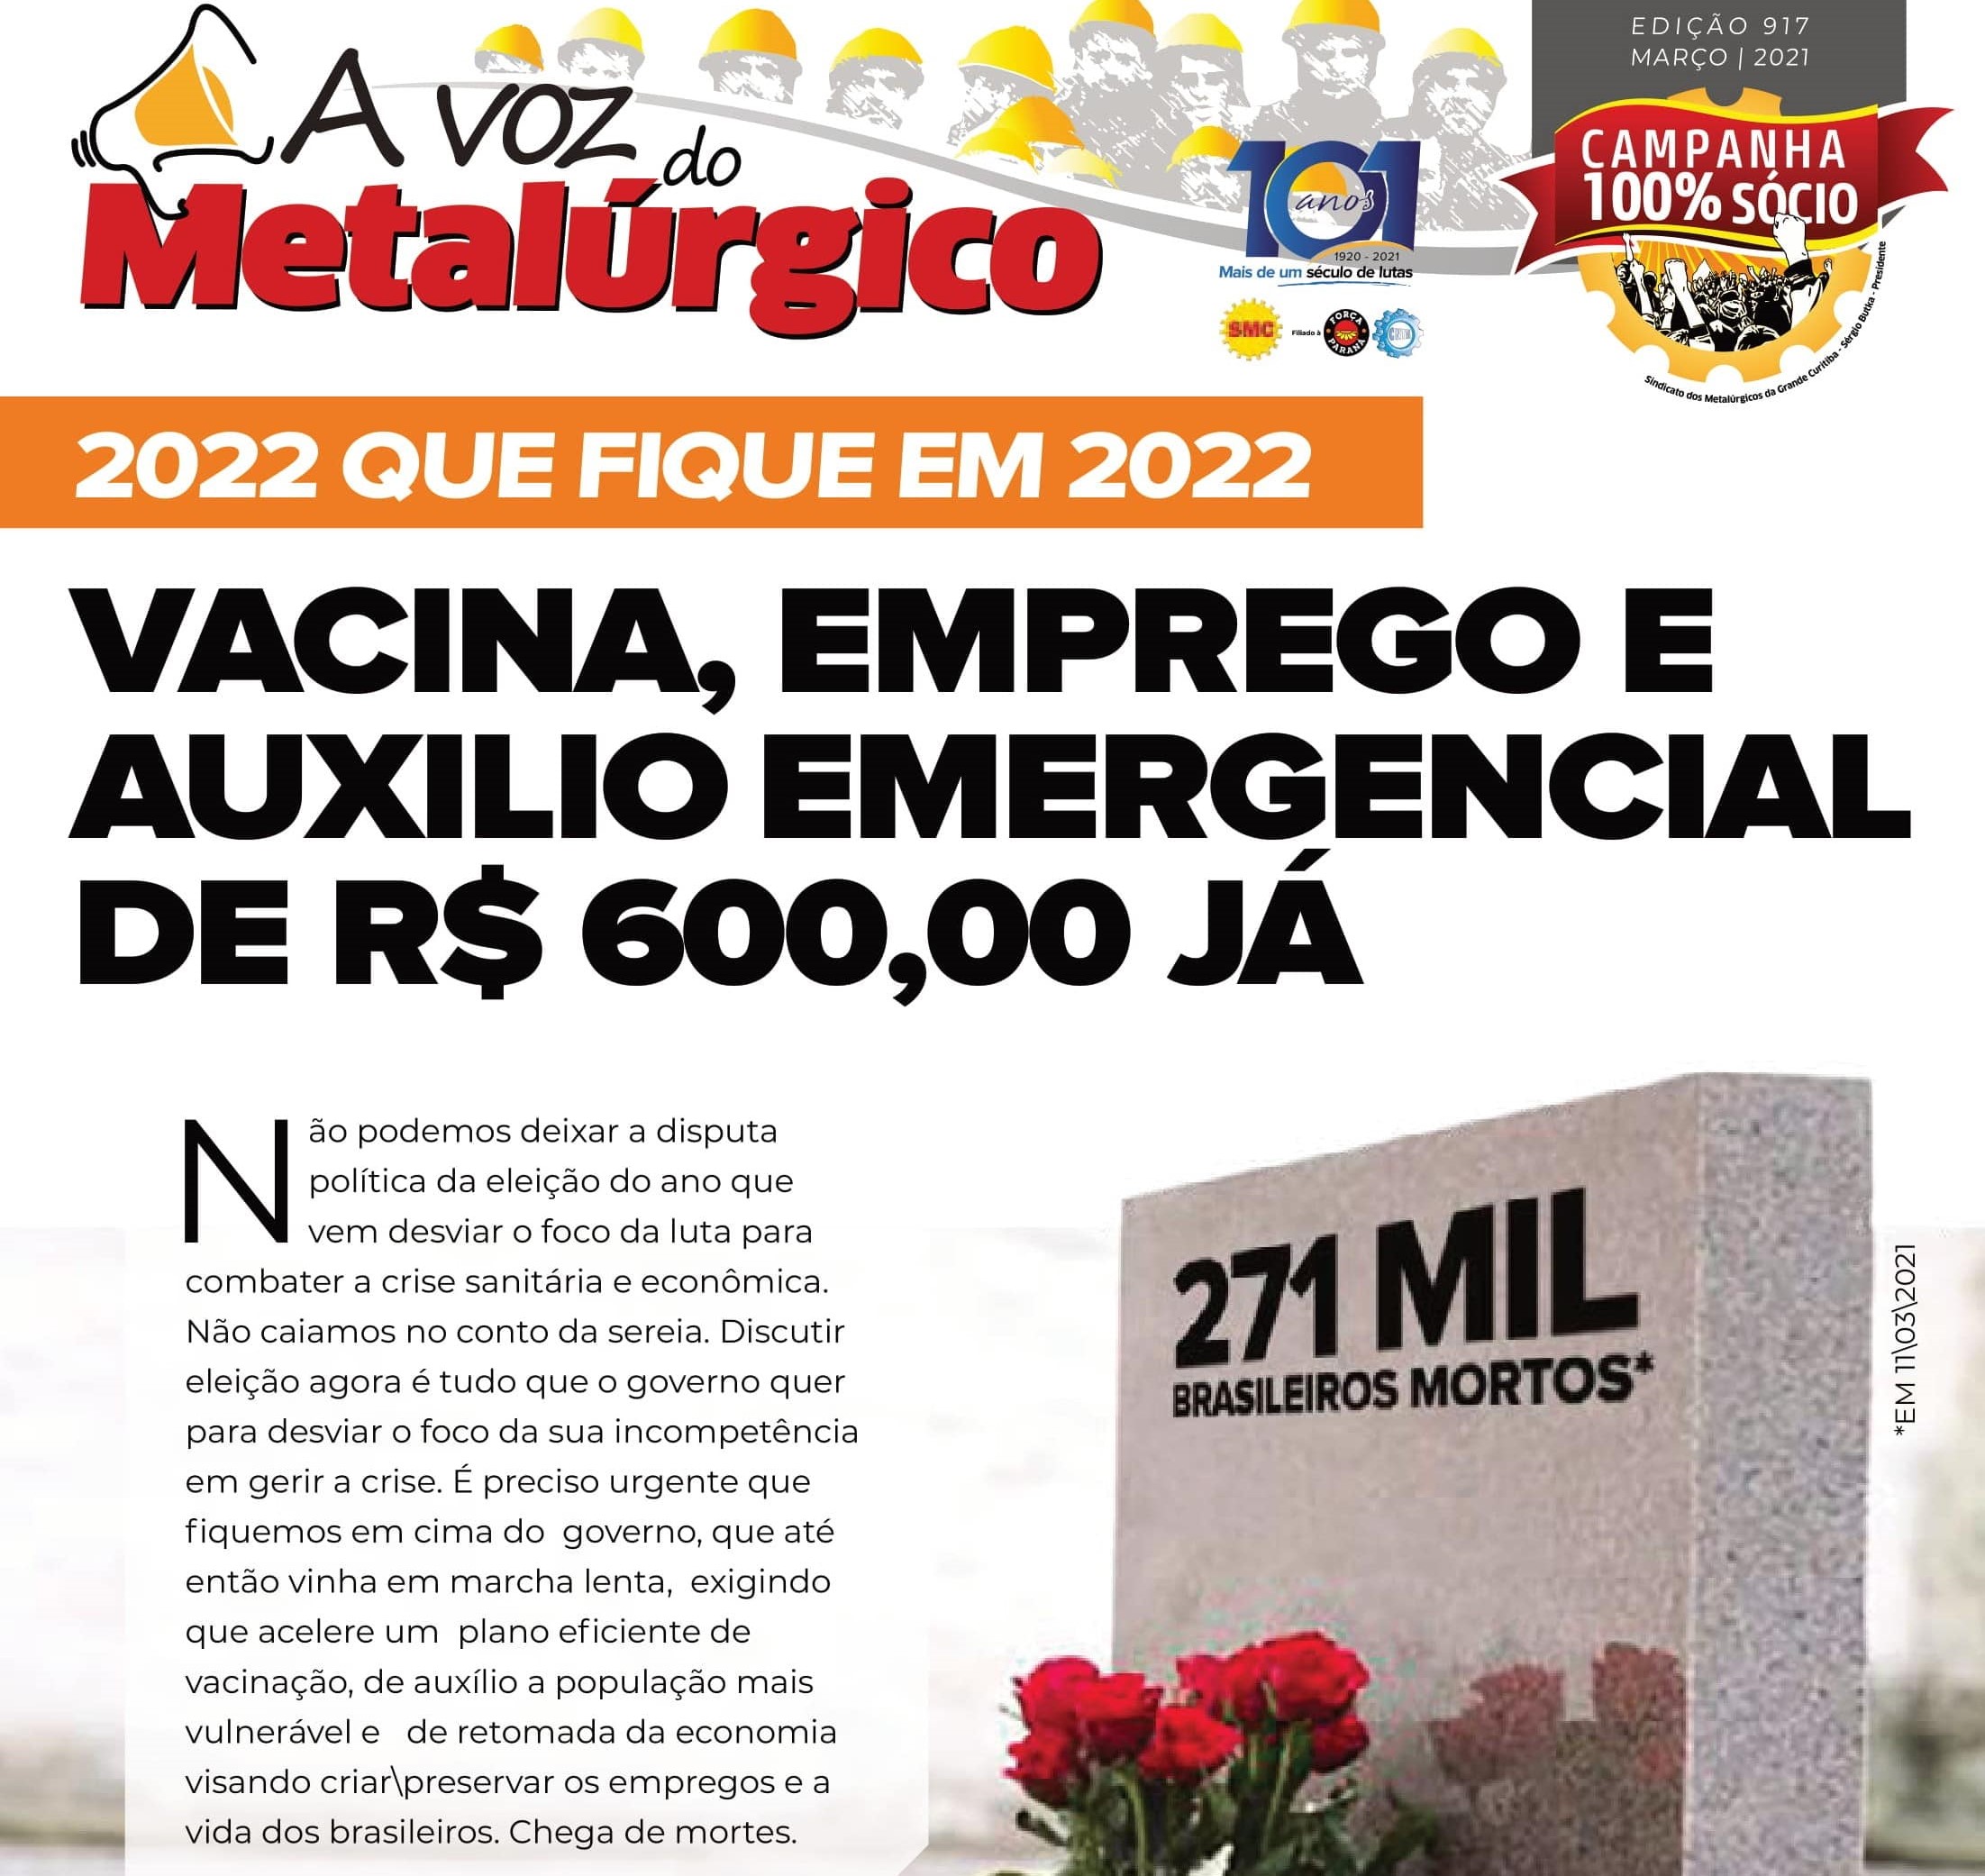 EDIÇÃO 917 DO VOZ DO METALÚRGICO JÁ TÁ NO AR!